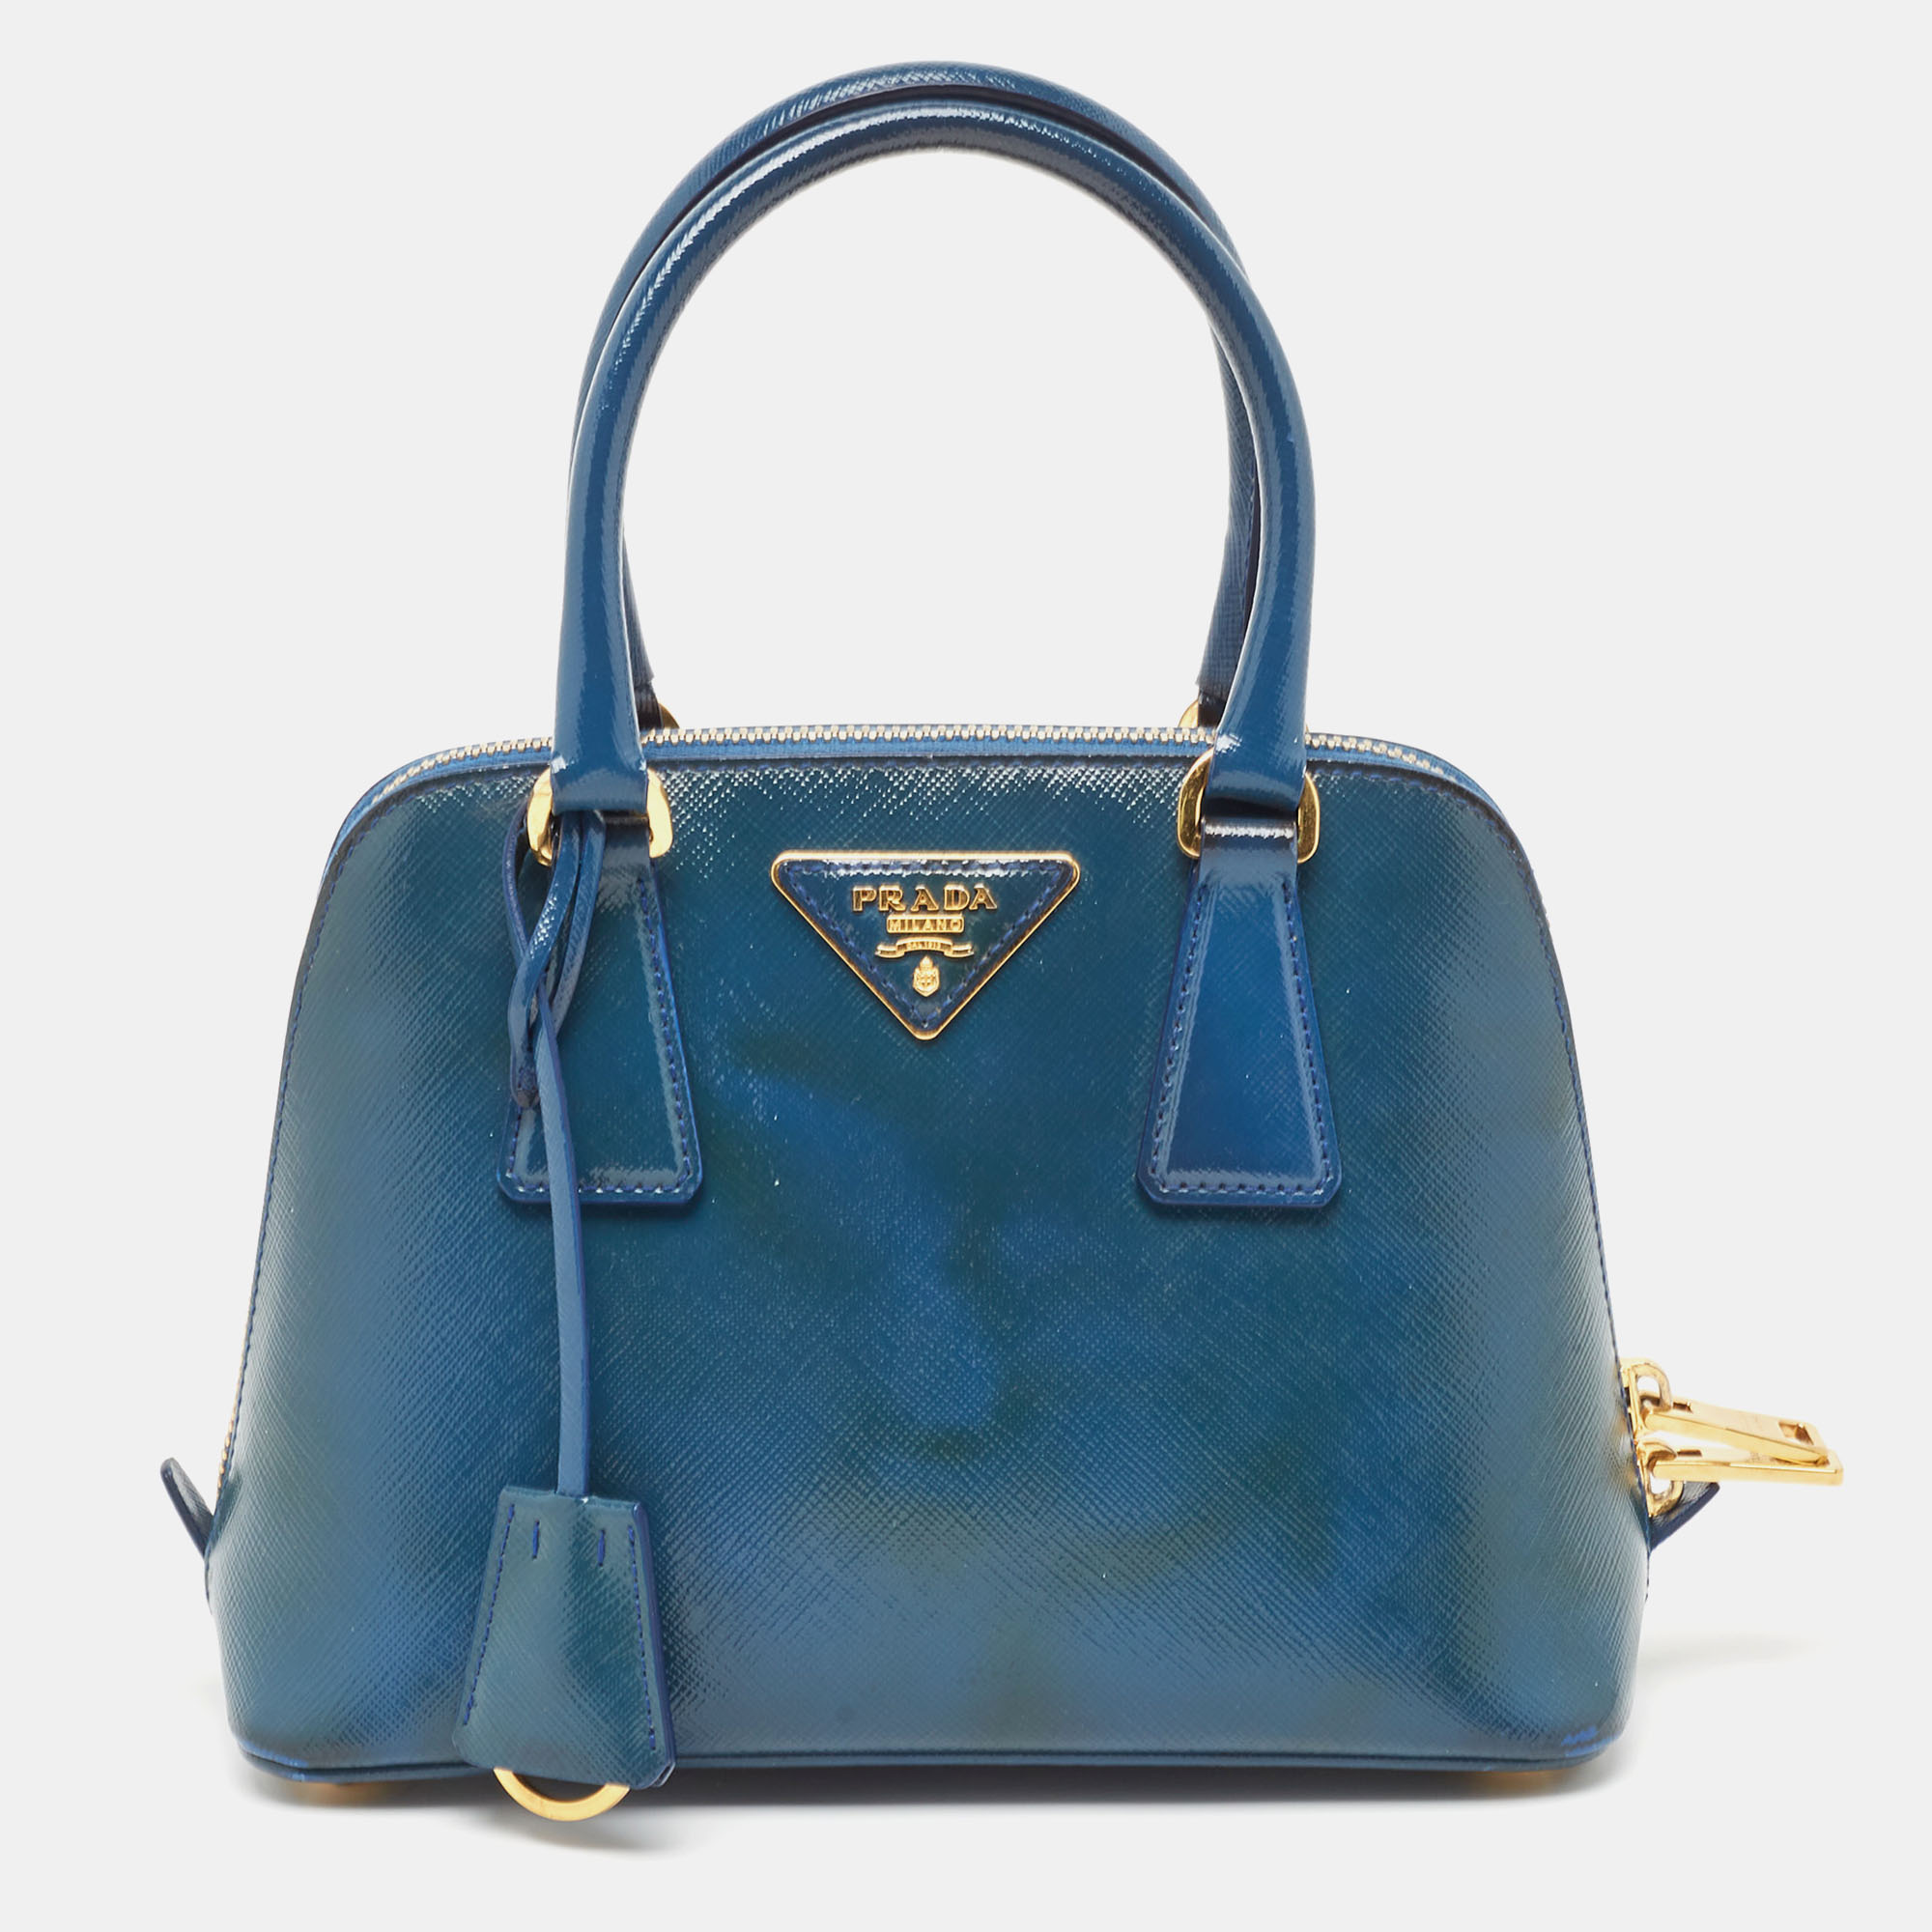 

Prada Blue Saffiano Patent Leather Small Promenade Satchel